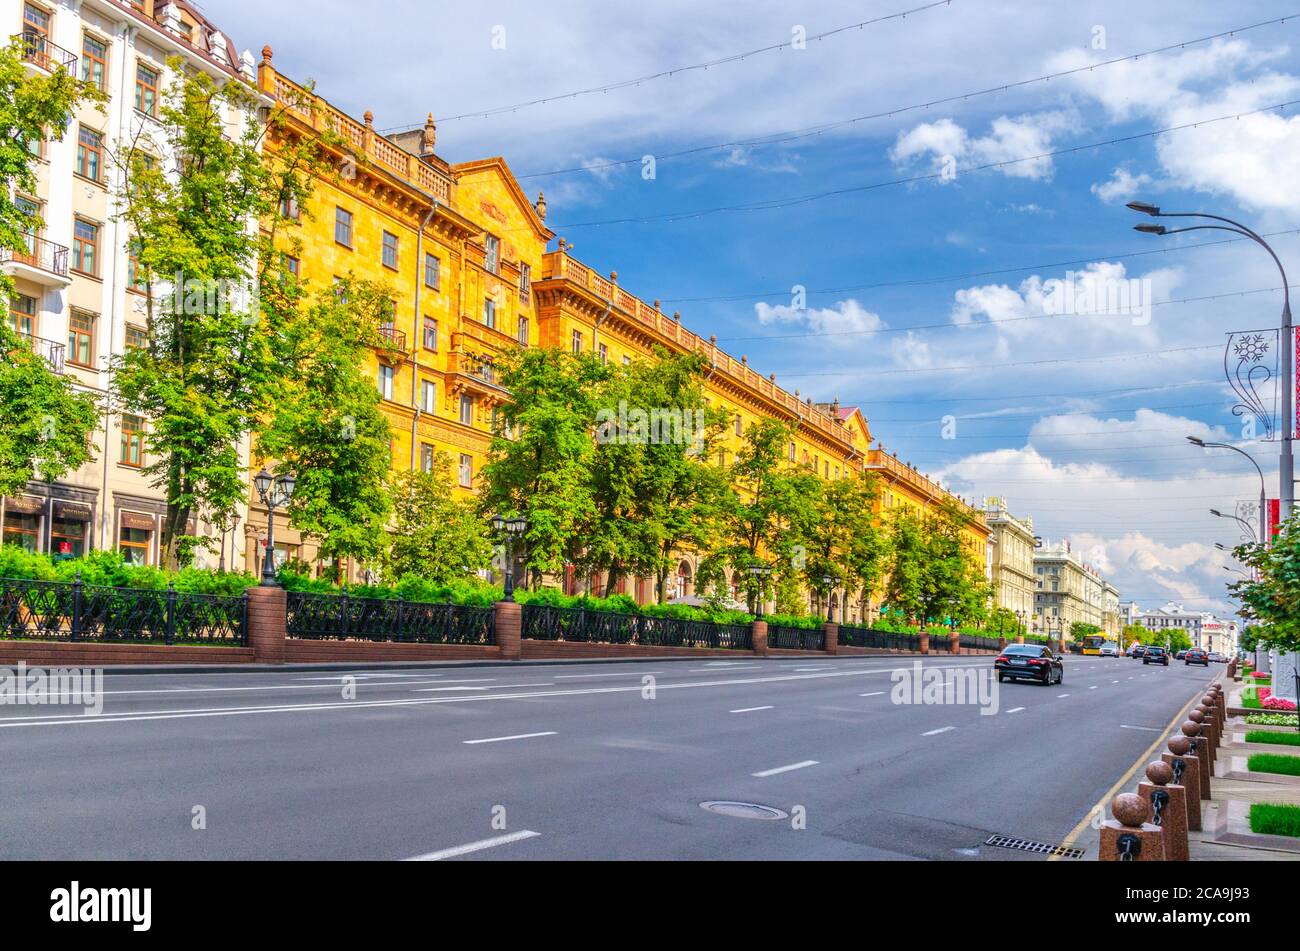 Minsk, Bielorussia, 26 luglio 2020: Viale Pobediteley Peramohi con il classicismo socialista edifici in stile Impero Stalin e alberi verdi vicolo, cielo blu nuvole bianche in estate soleggiato giorno Foto Stock